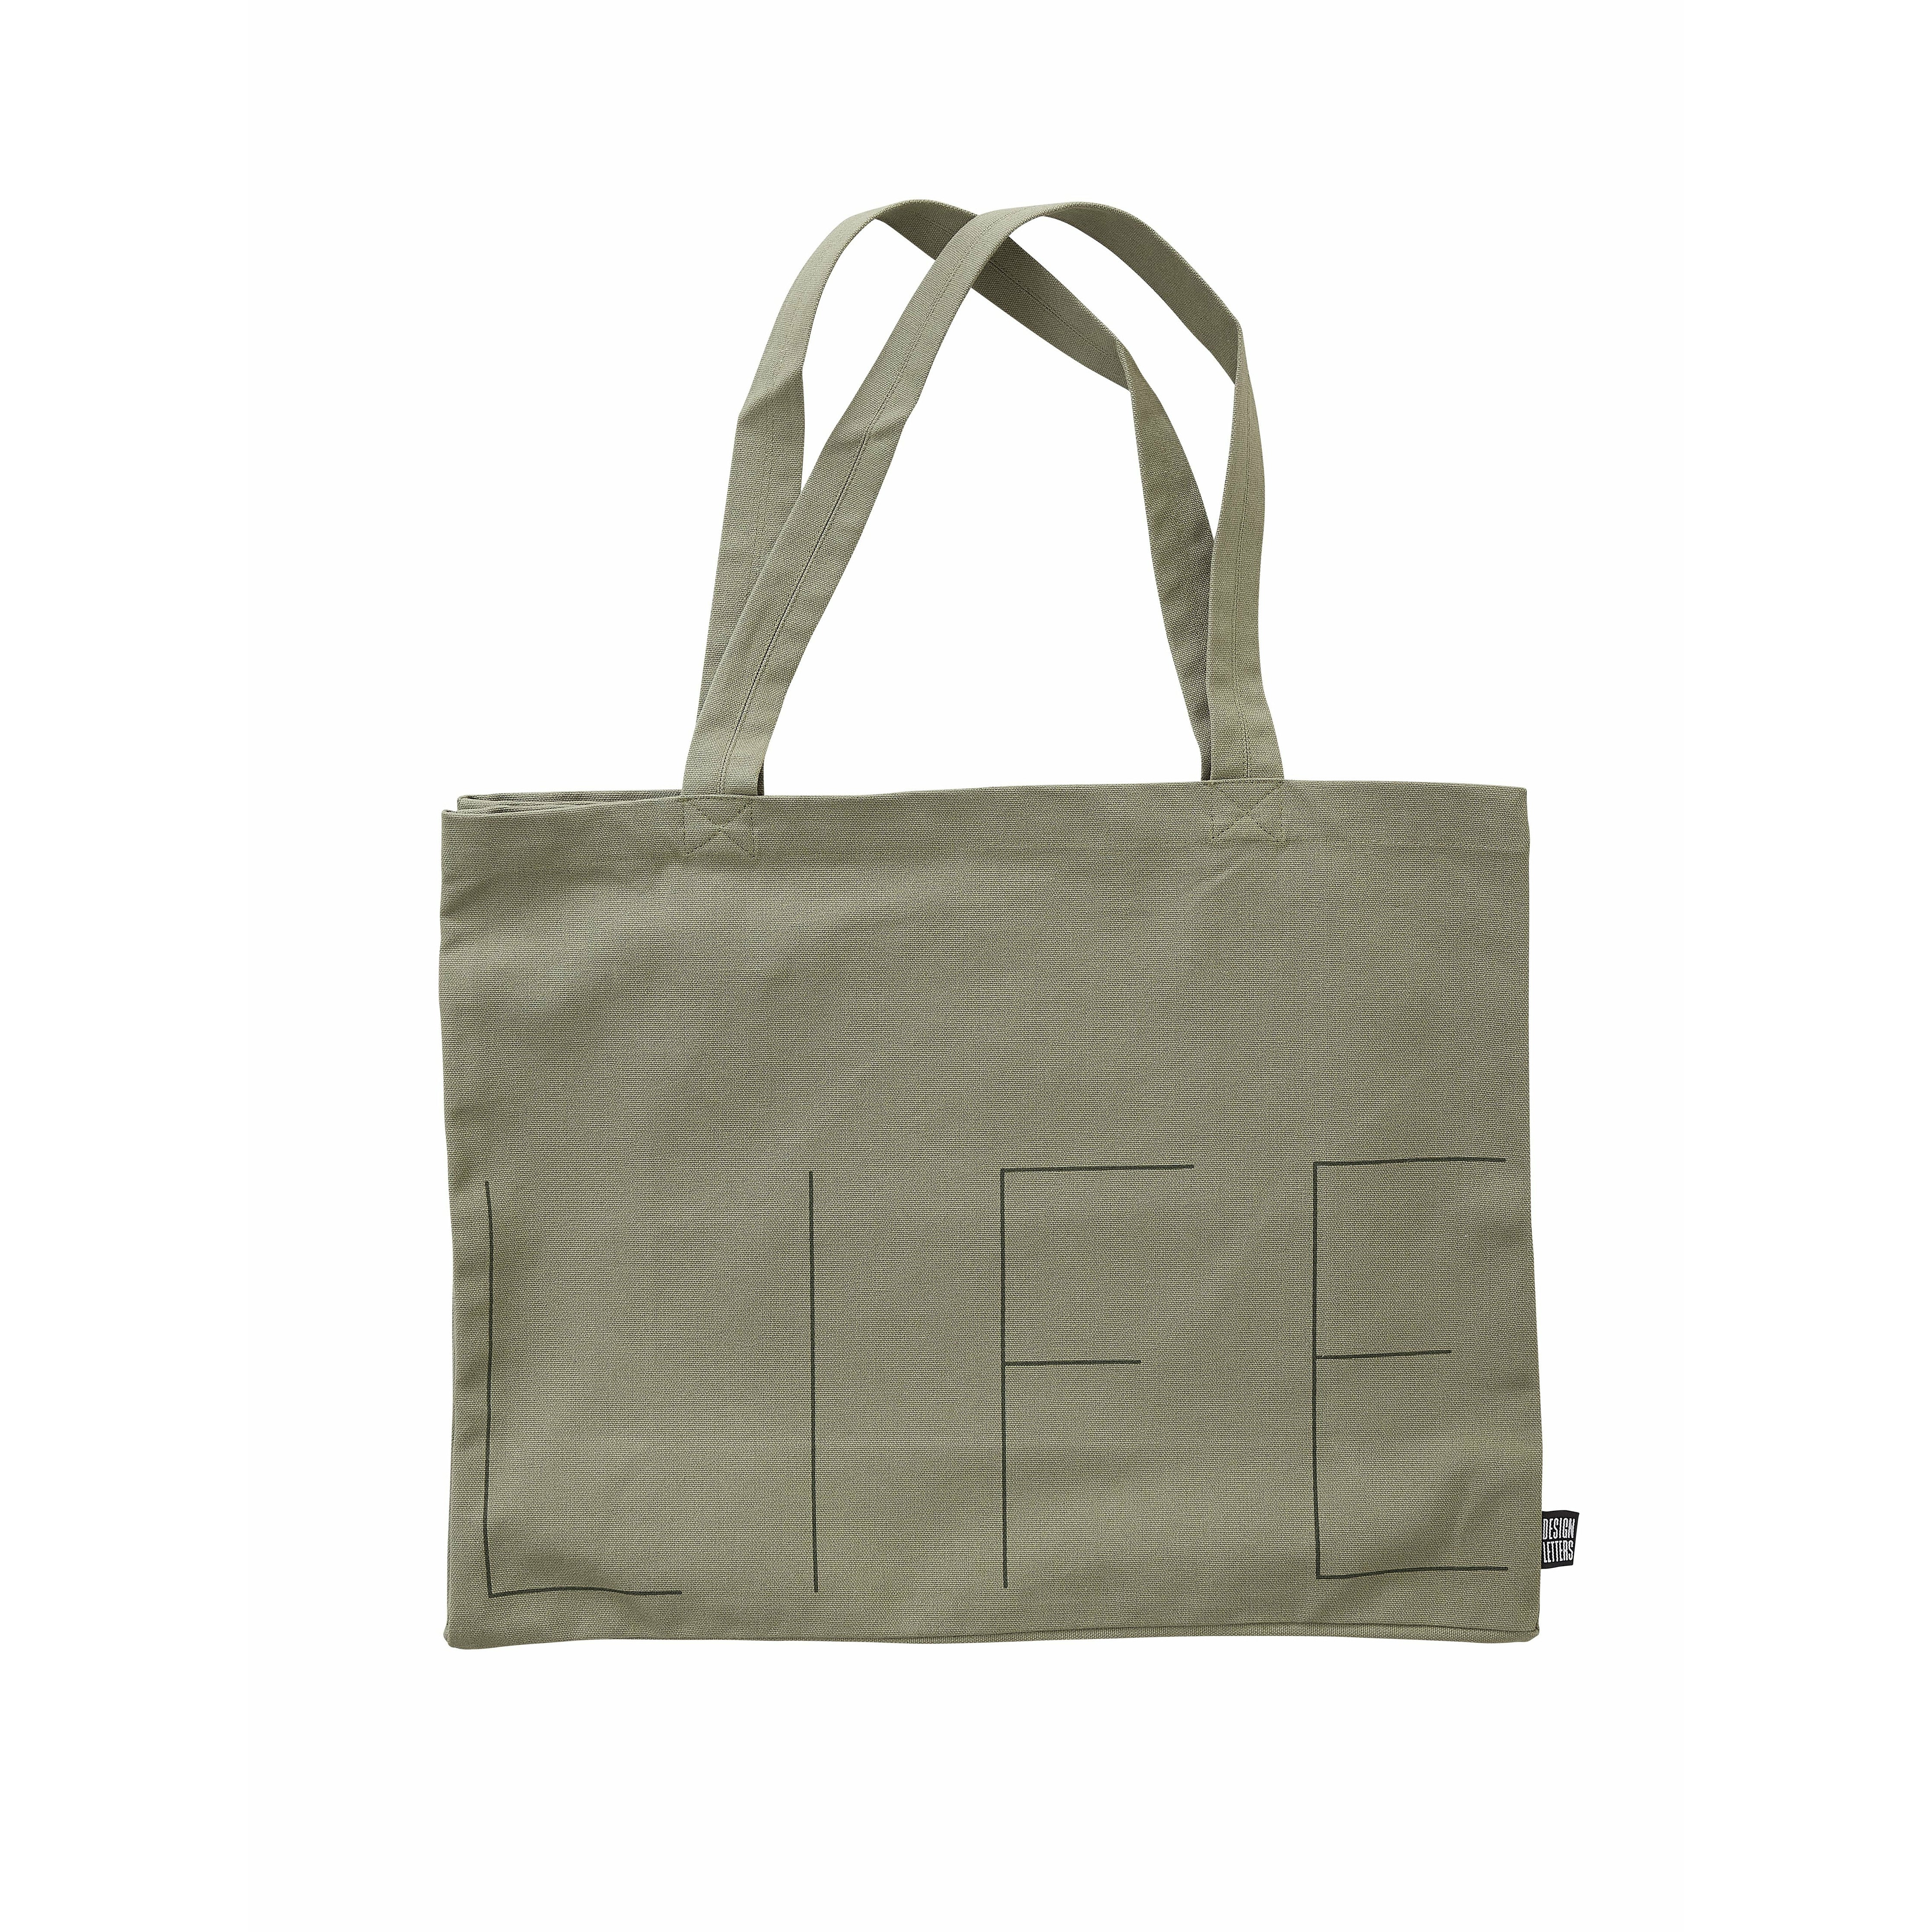 Design Dopisy Life nosit tašku, Olive Green